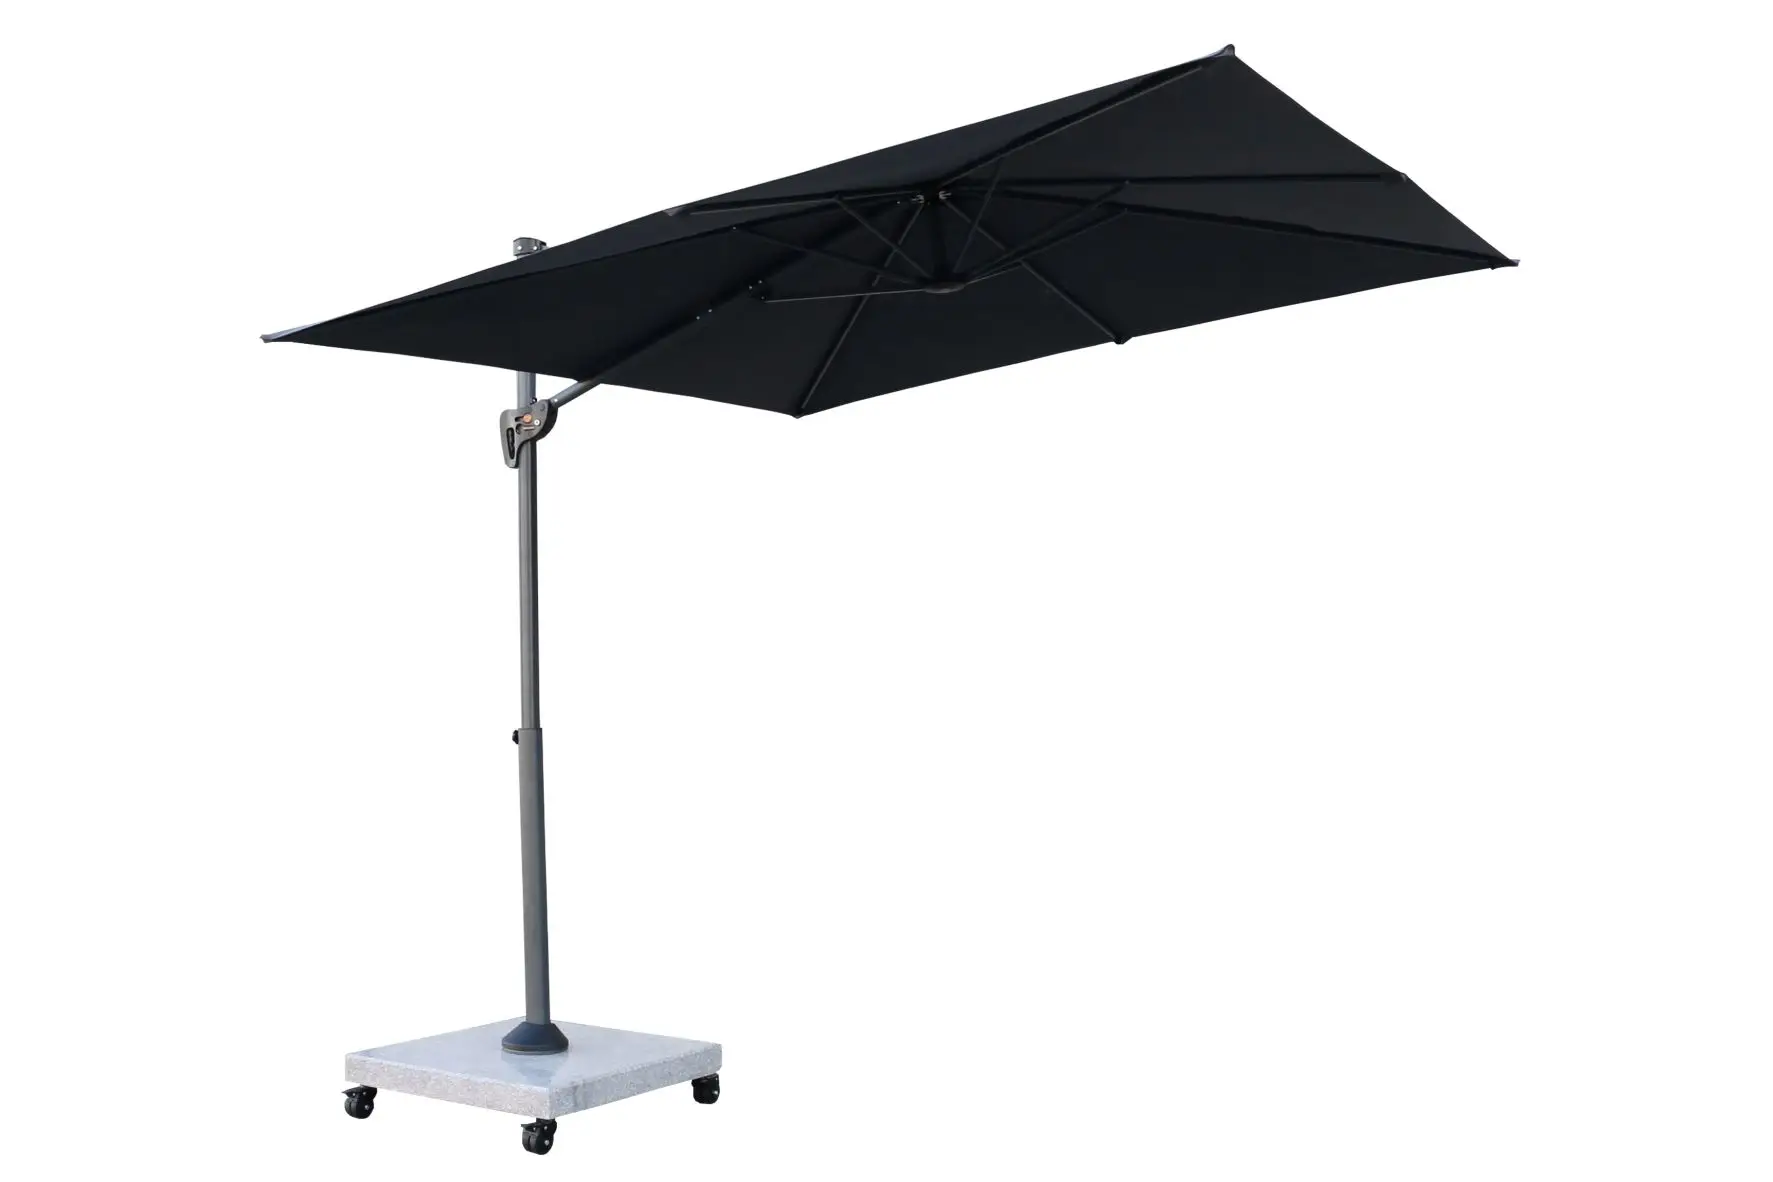 Cheap High quality Cantilever Rotating Garden fancy Design Umbrella Outdoor Patio commercial umbrella heavy duty garden parasol